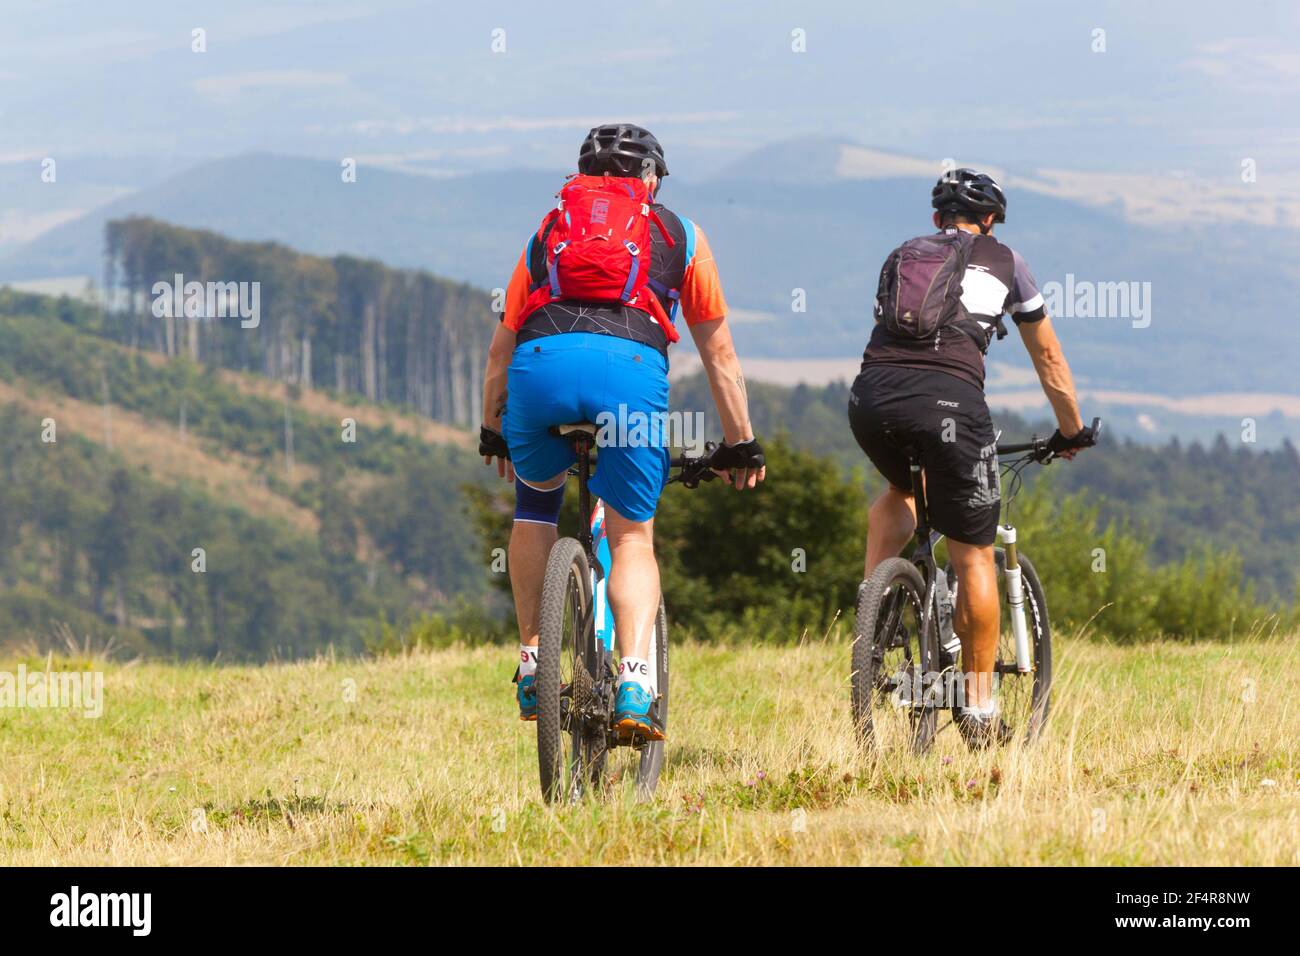 Zwei männliche Biker auf dem Mountainbike fahren die Wiese hinunter und haben einen aktiven gesunden Lebensstil Stockfoto